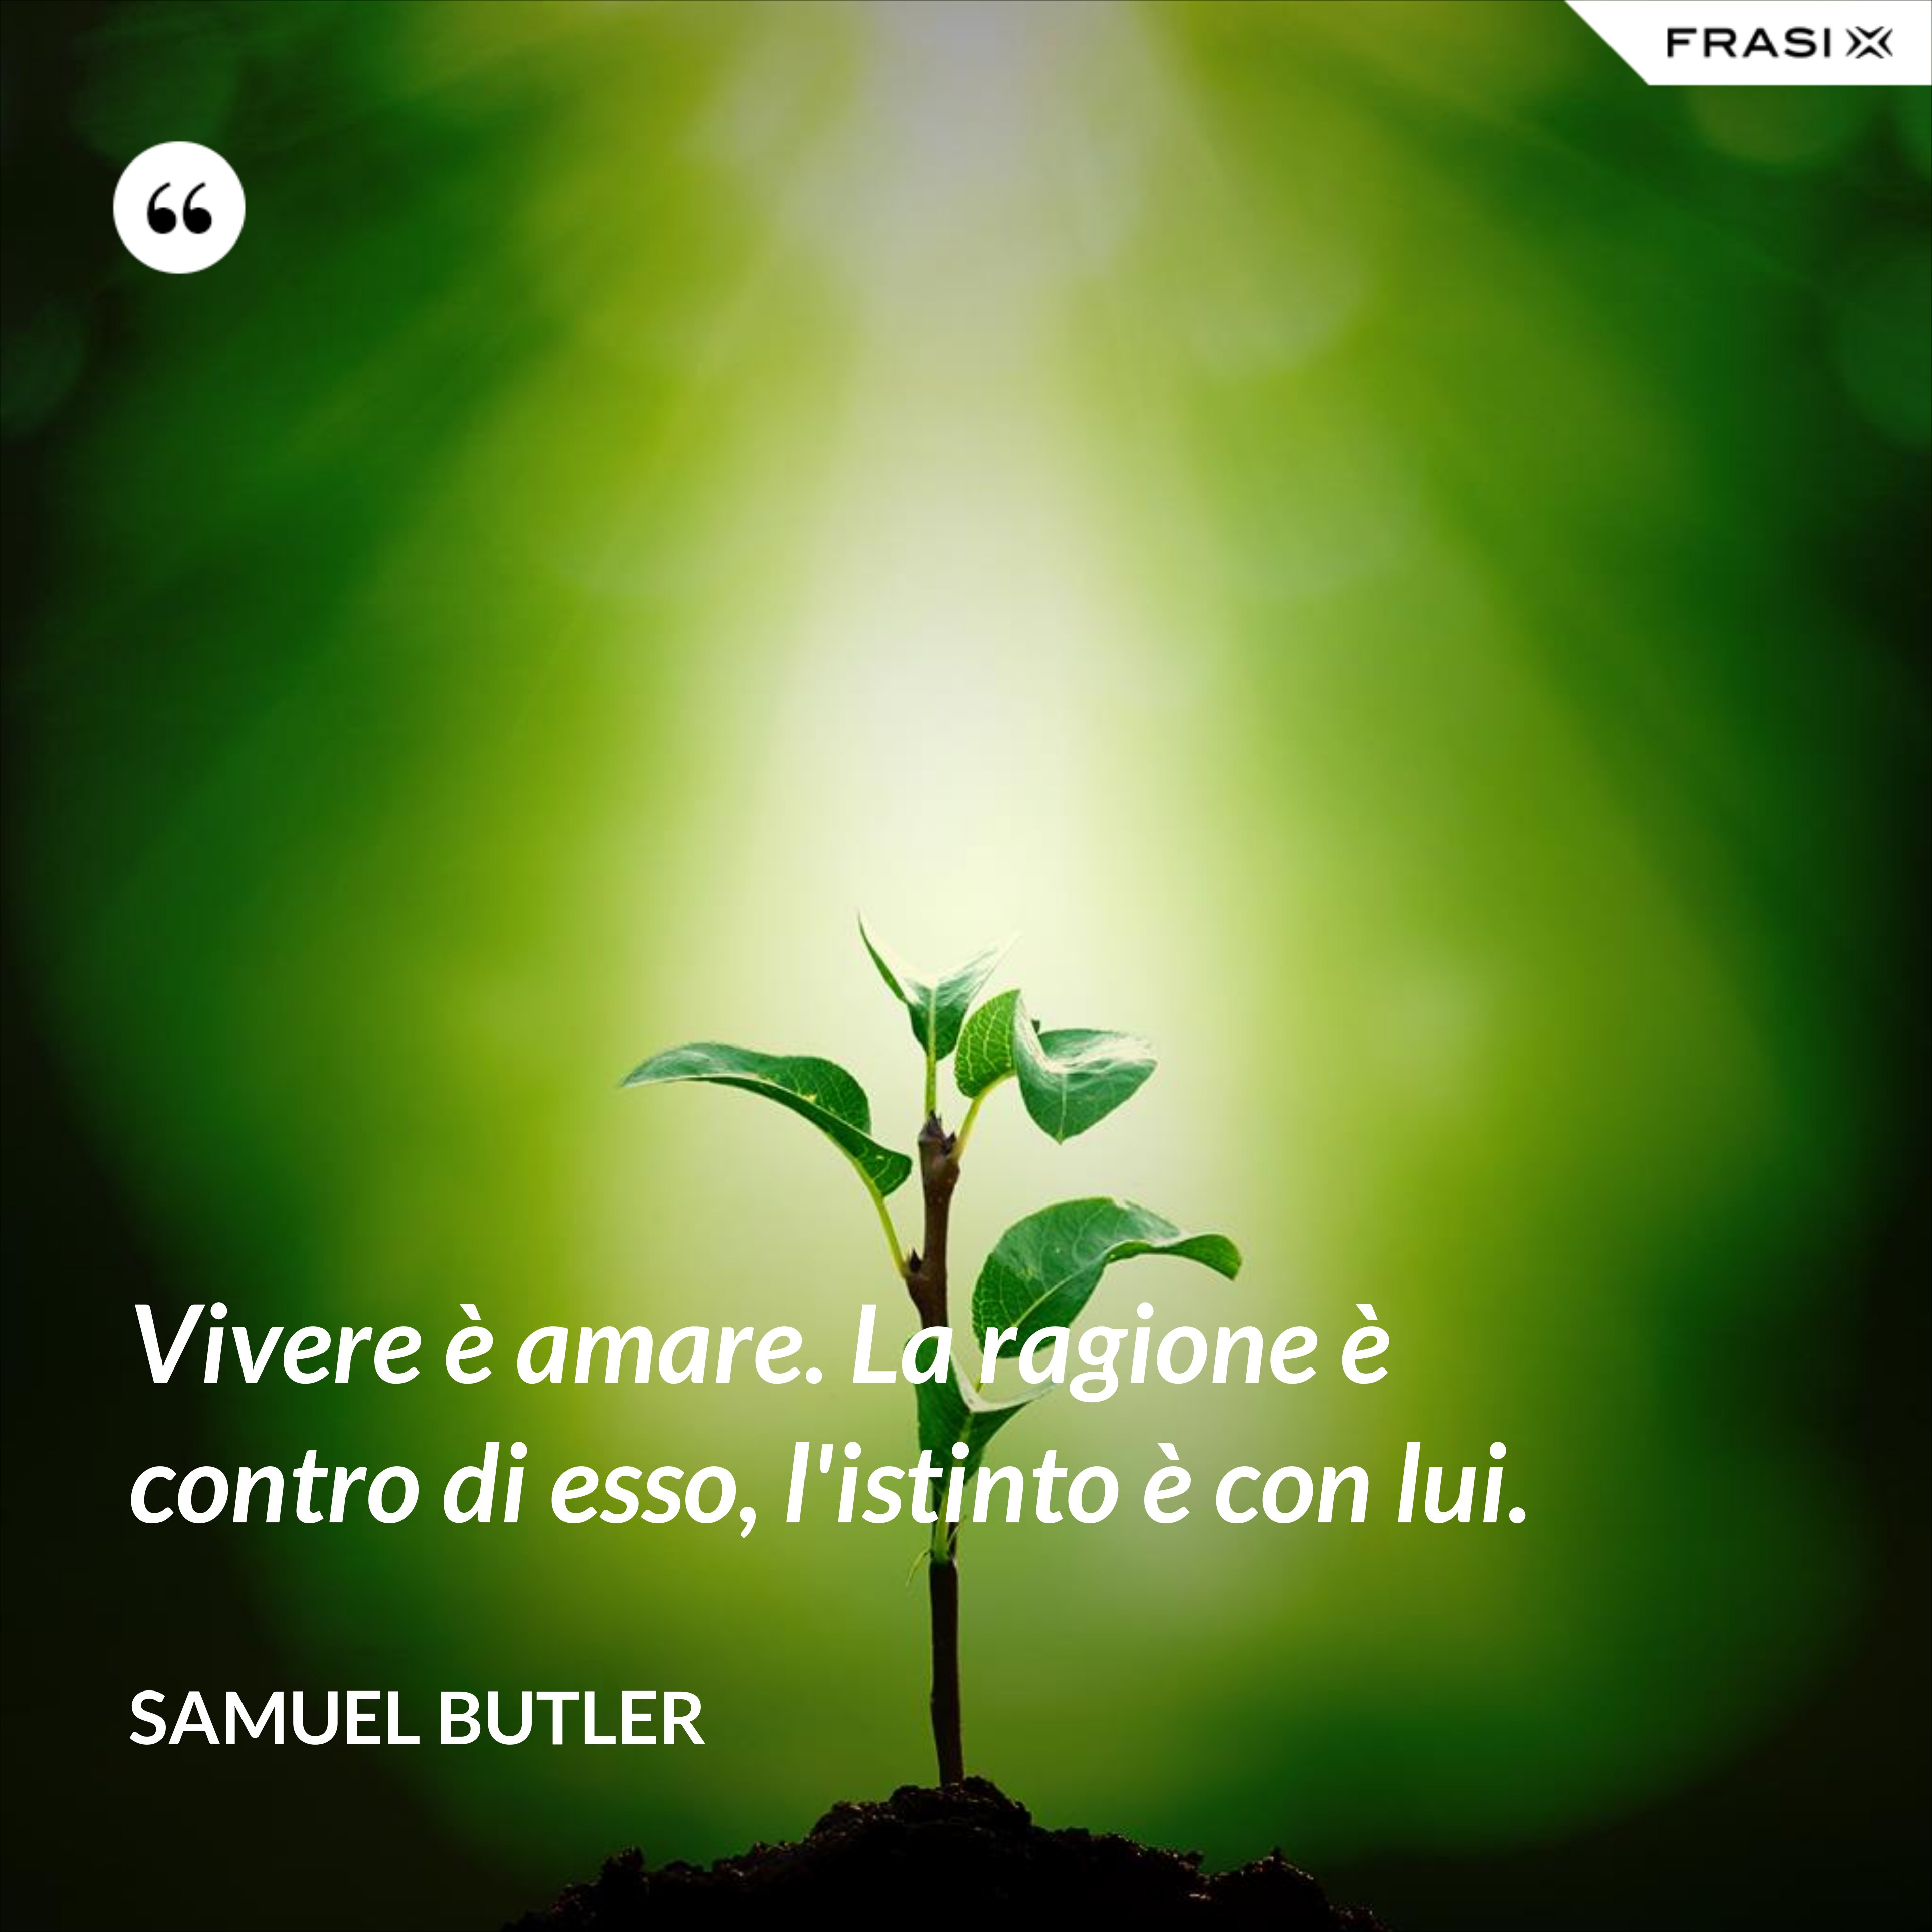 Vivere è amare. La ragione è contro di esso, l'istinto è con lui. - Samuel Butler